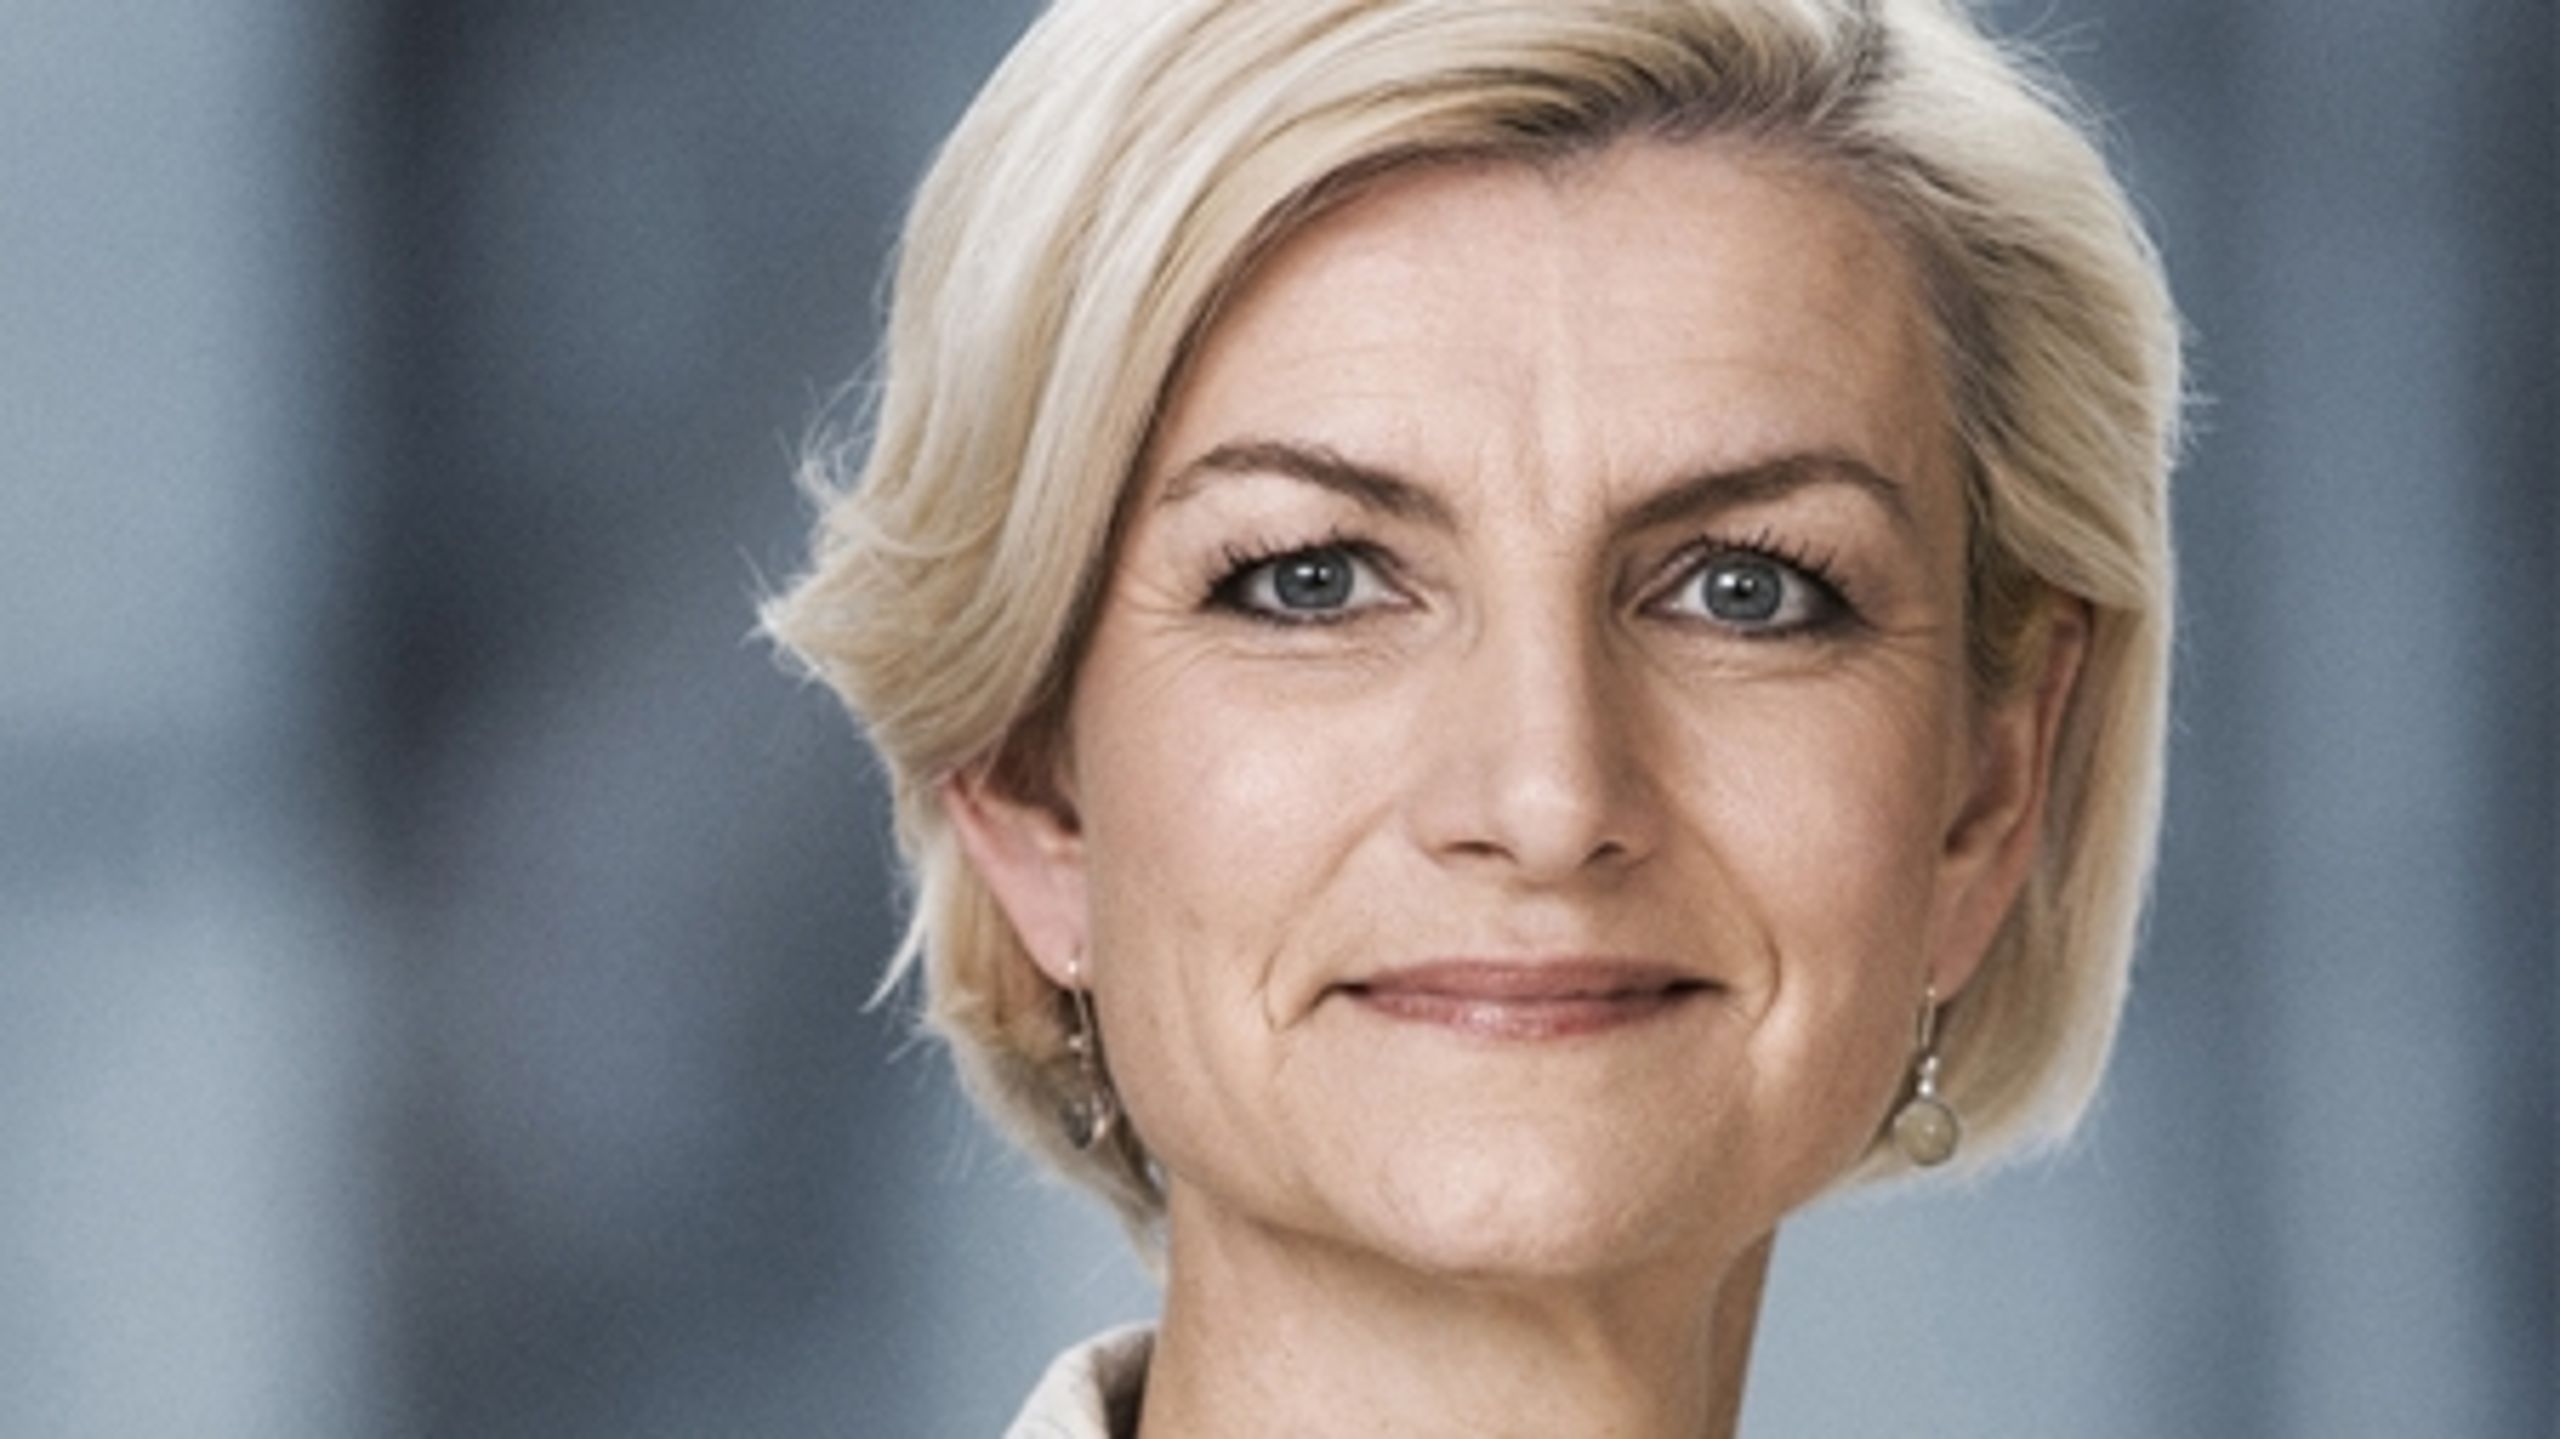 Venstre skal tilbage i Landbrugsudvalget i Europa-Parlamentet, og så skal det indre marked udvikles, mener spidskandidat Ulla Tørnæs (V).